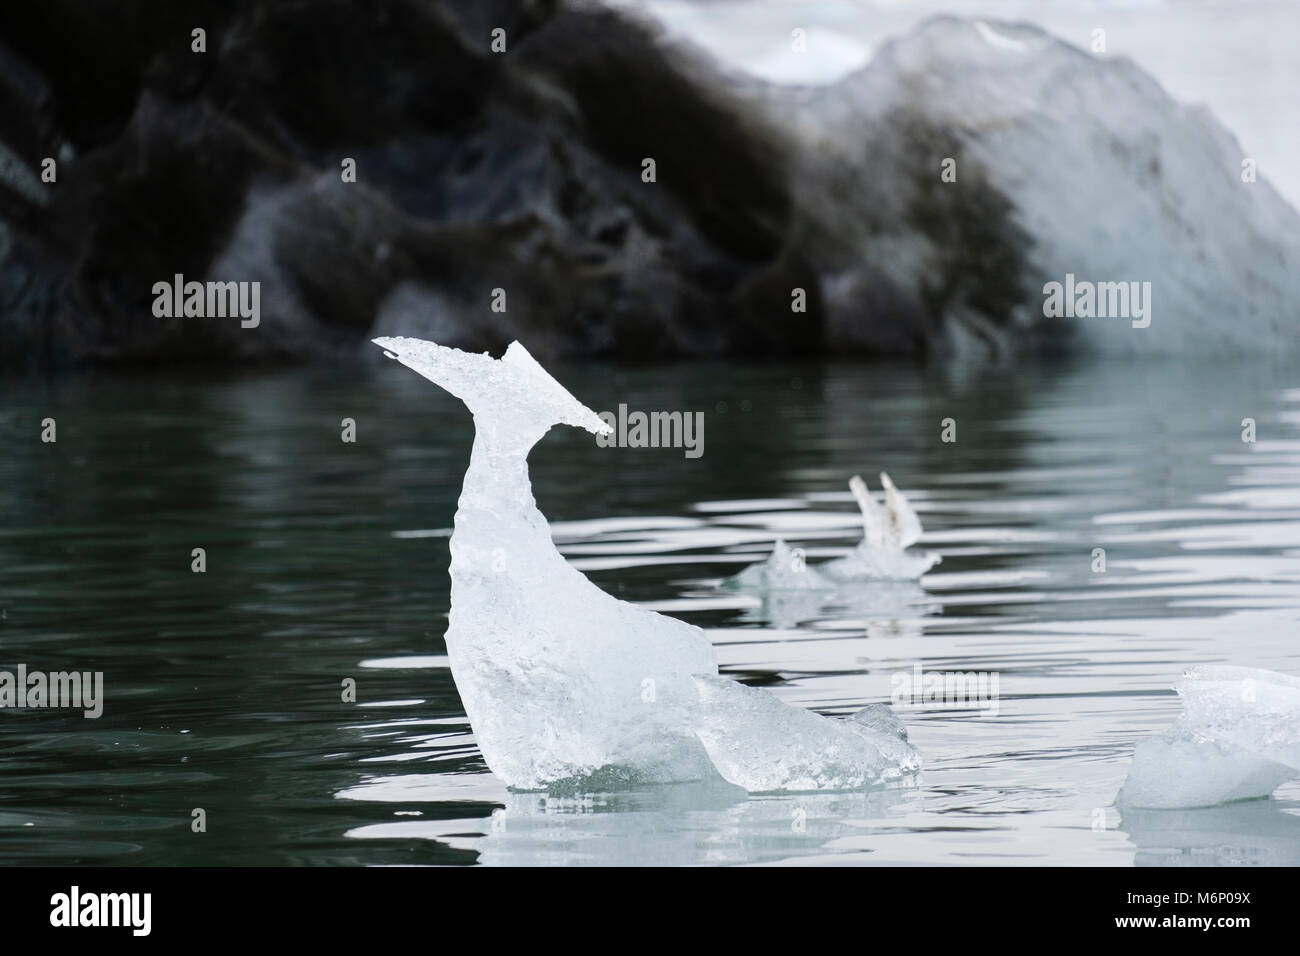 La forma naturale della scultura di ghiaccio conformato come un uccello fluttuante nel mare ghiacciato off Spitsbergen, Svalbard, Norvegia, Scandinavia, Europa Foto Stock